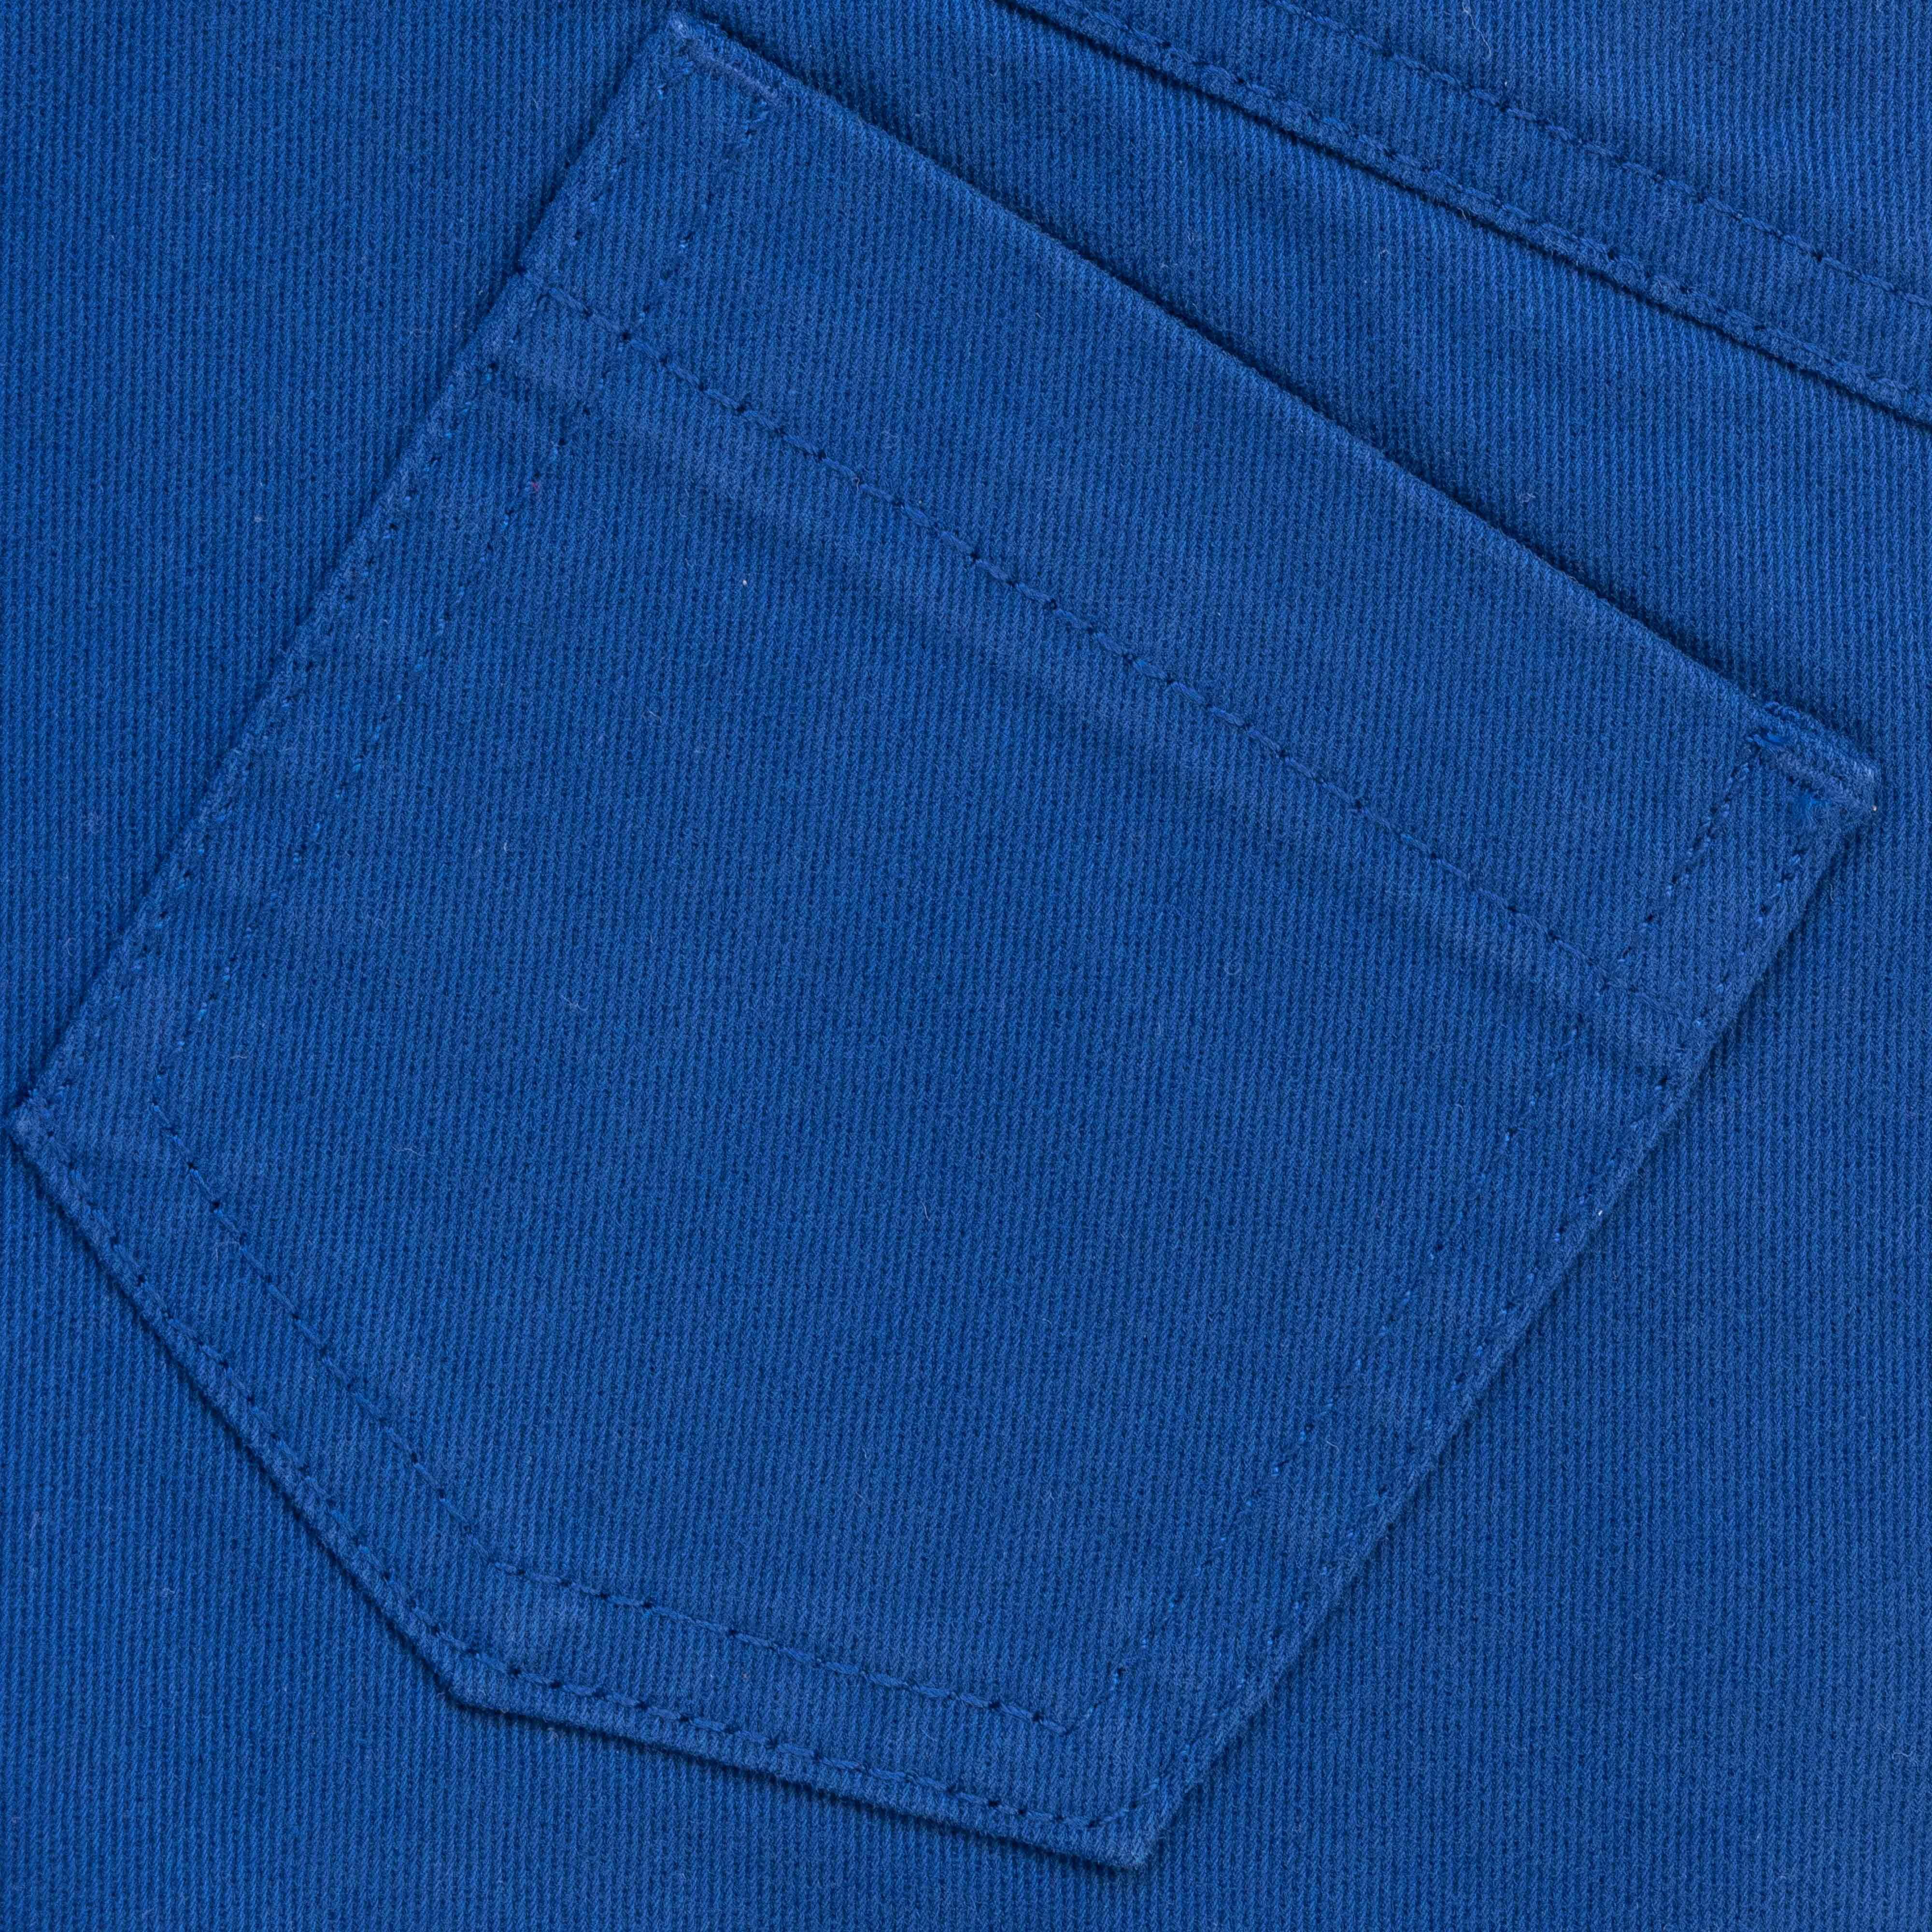 Girl Toddler Cotton Shorts - Dark Blue - Juscubs